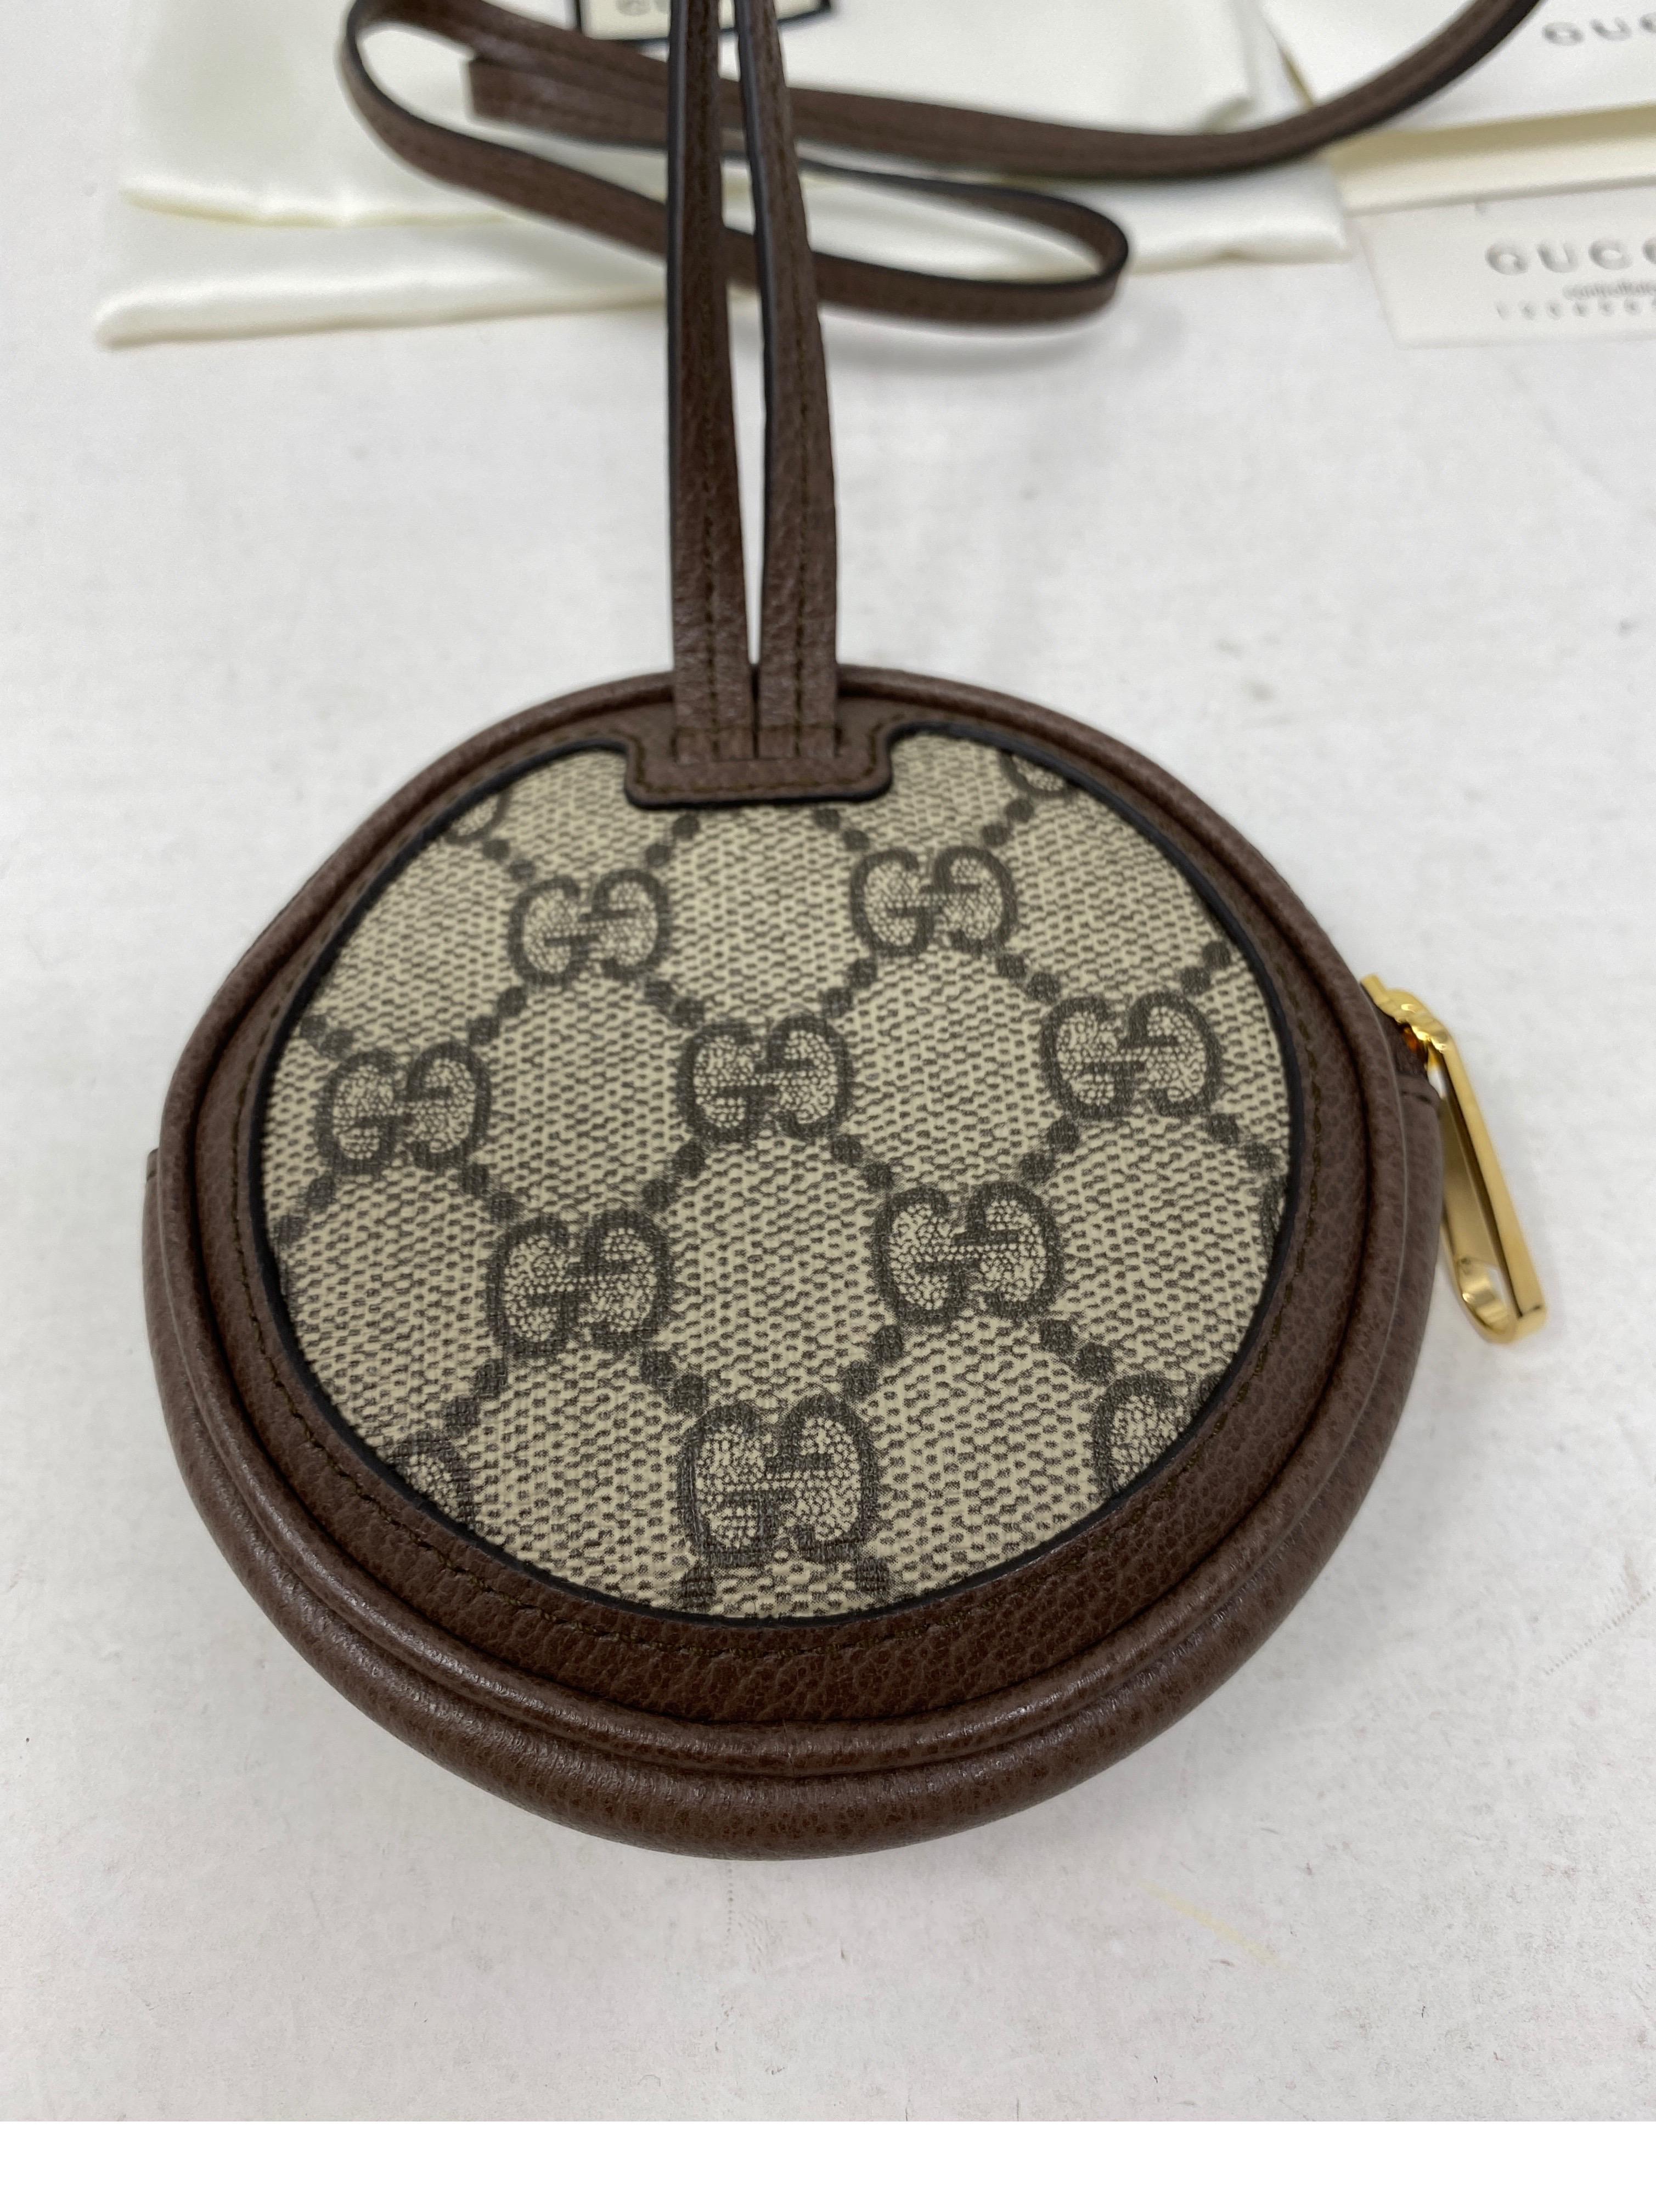 Gucci Mini Coin Purse Crossbody Bag 1